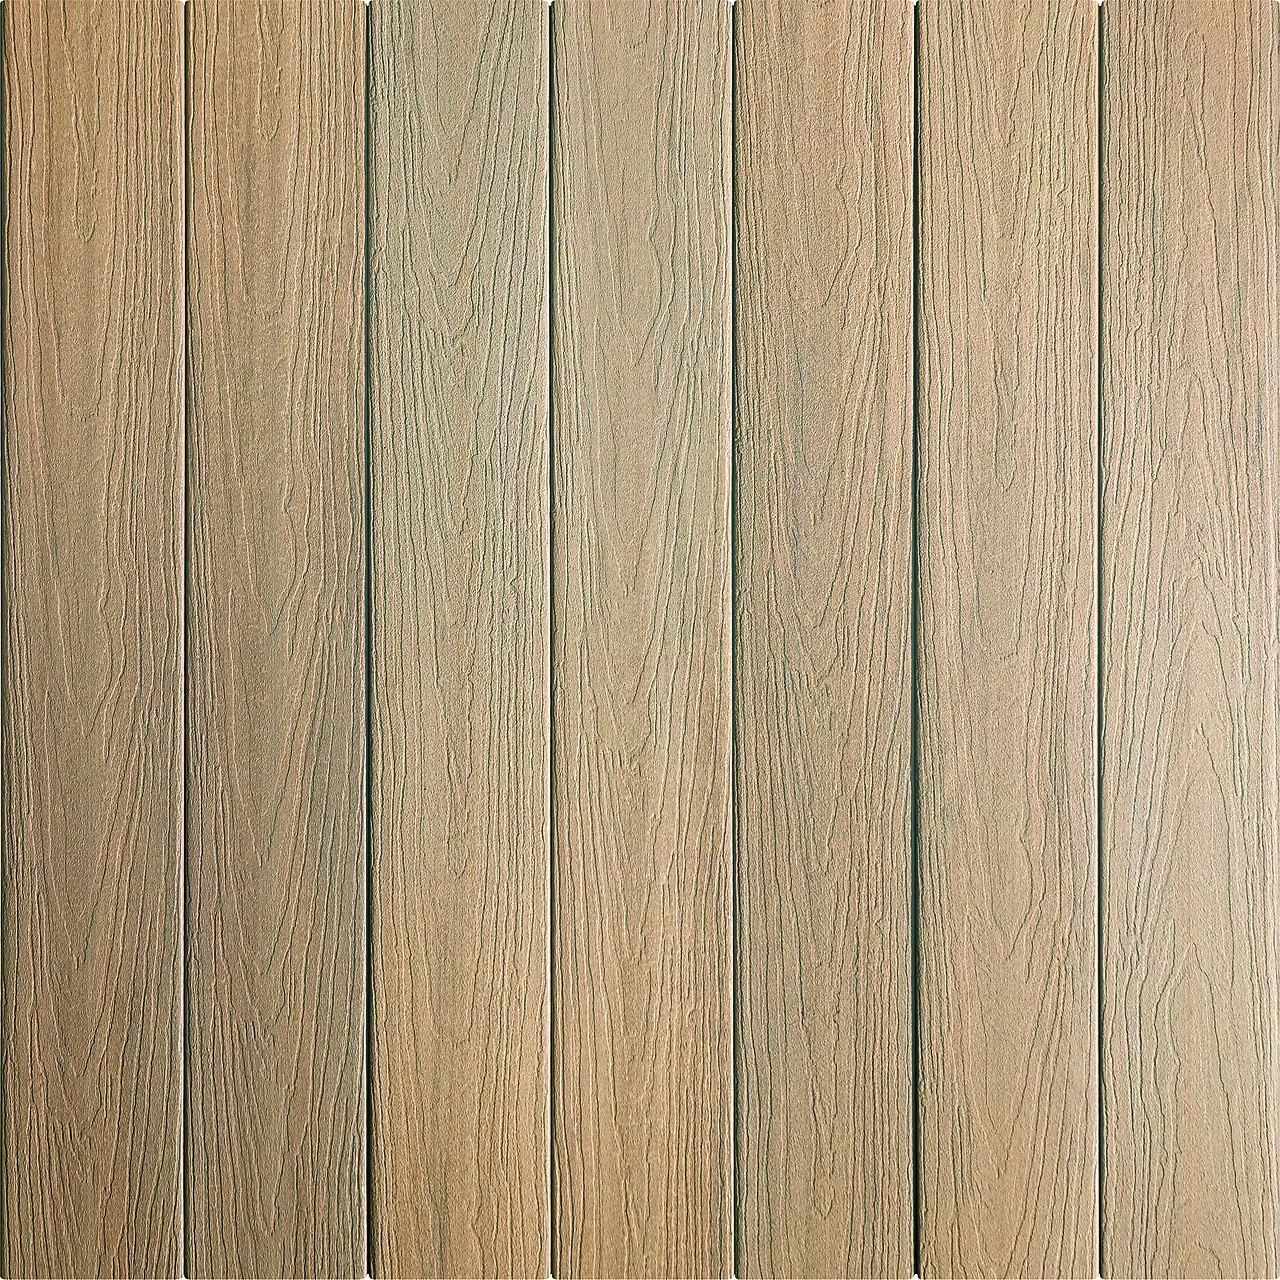 Kompositt terrassebord lys brun rettkant Prairie 24x137x4880 mm null - null - 3